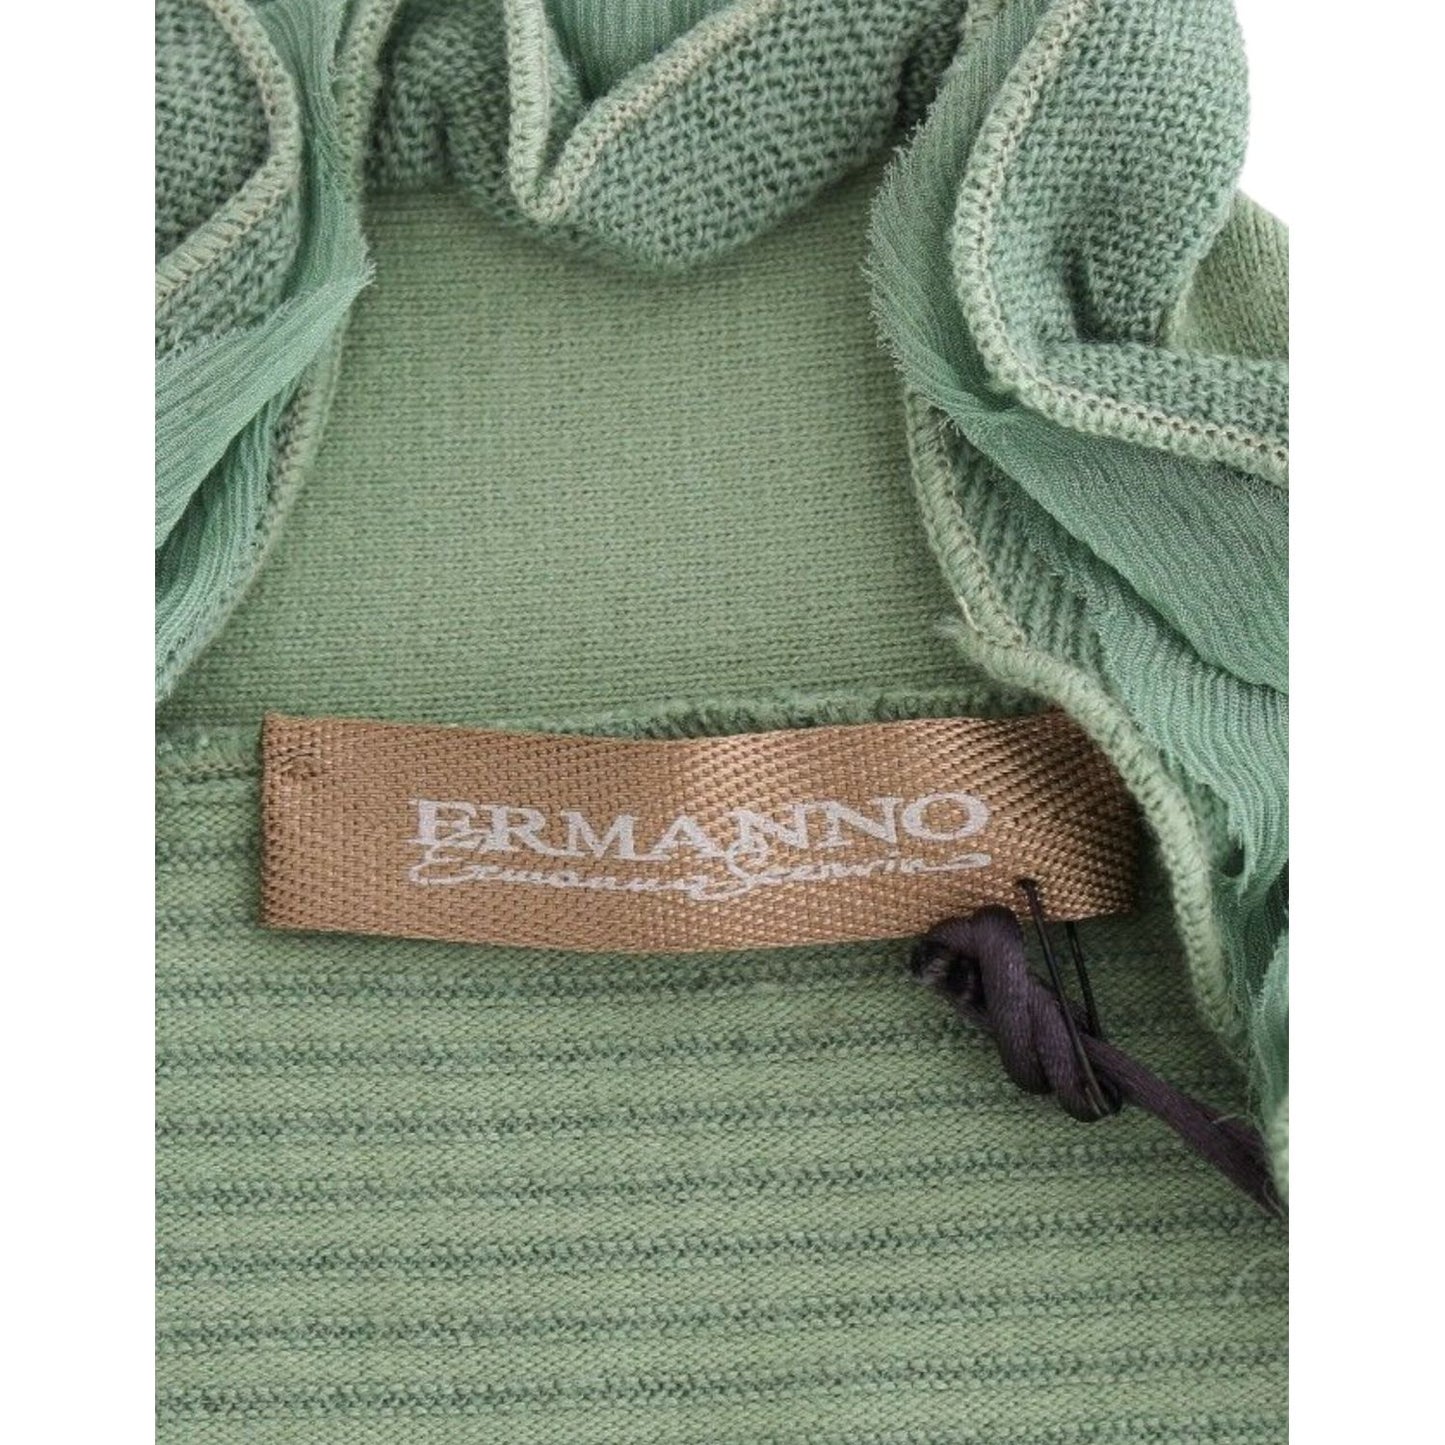 Ermanno ScervinoElegant Green Striped Wool Blend SweaterMcRichard Designer Brands£169.00